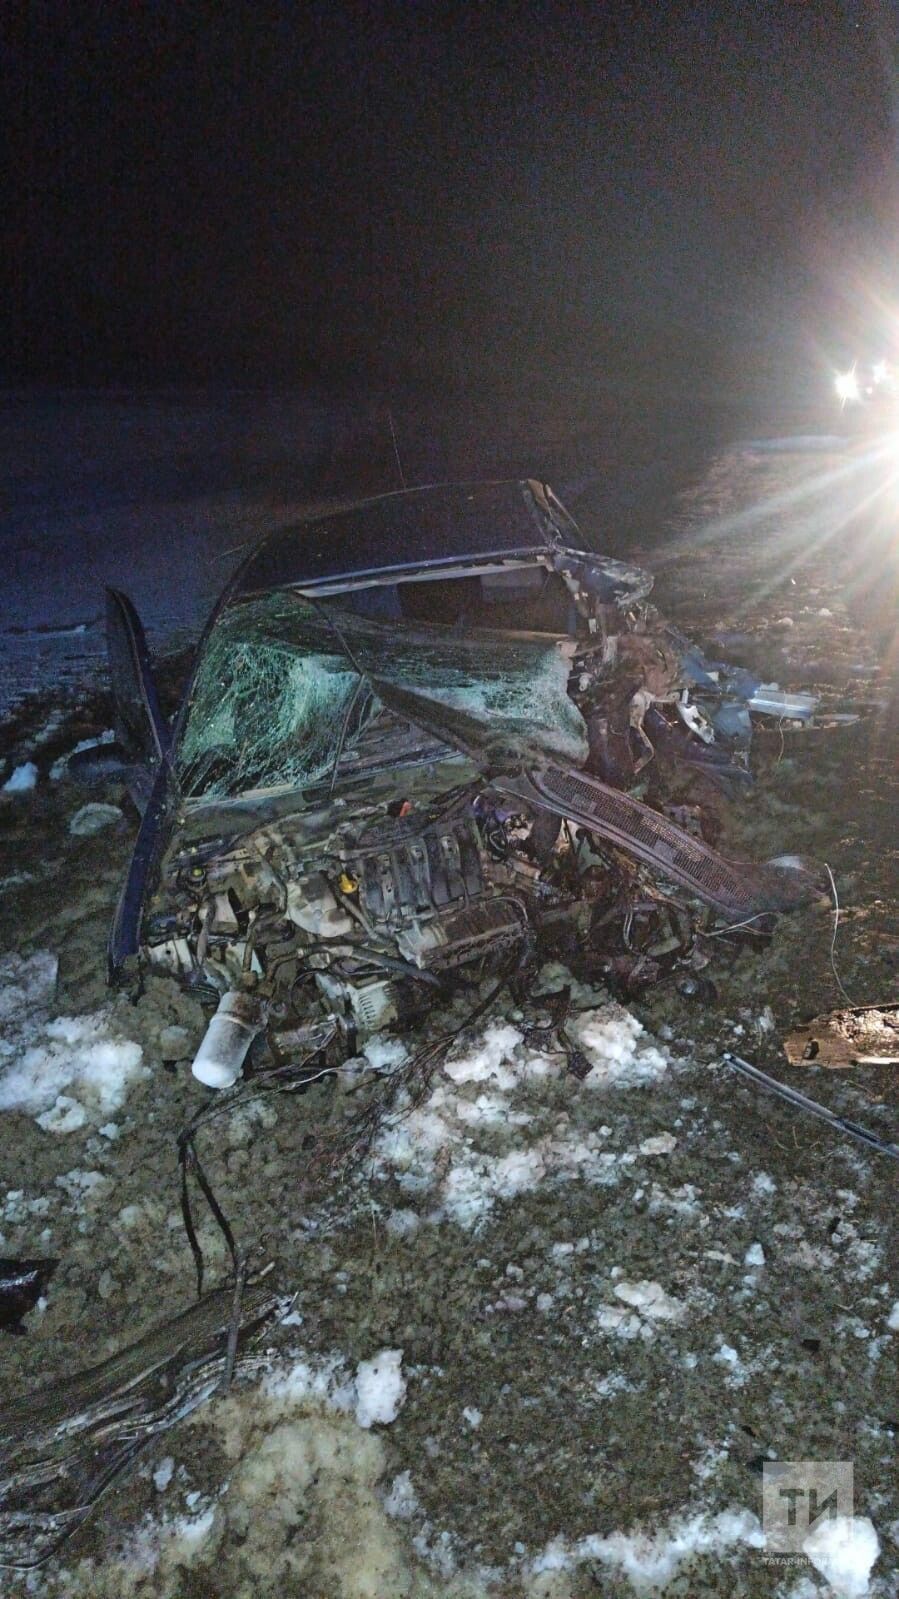 Водитель и пассажир автомобиля чудом остались живы после лобового столкновения с «КАМАЗом»